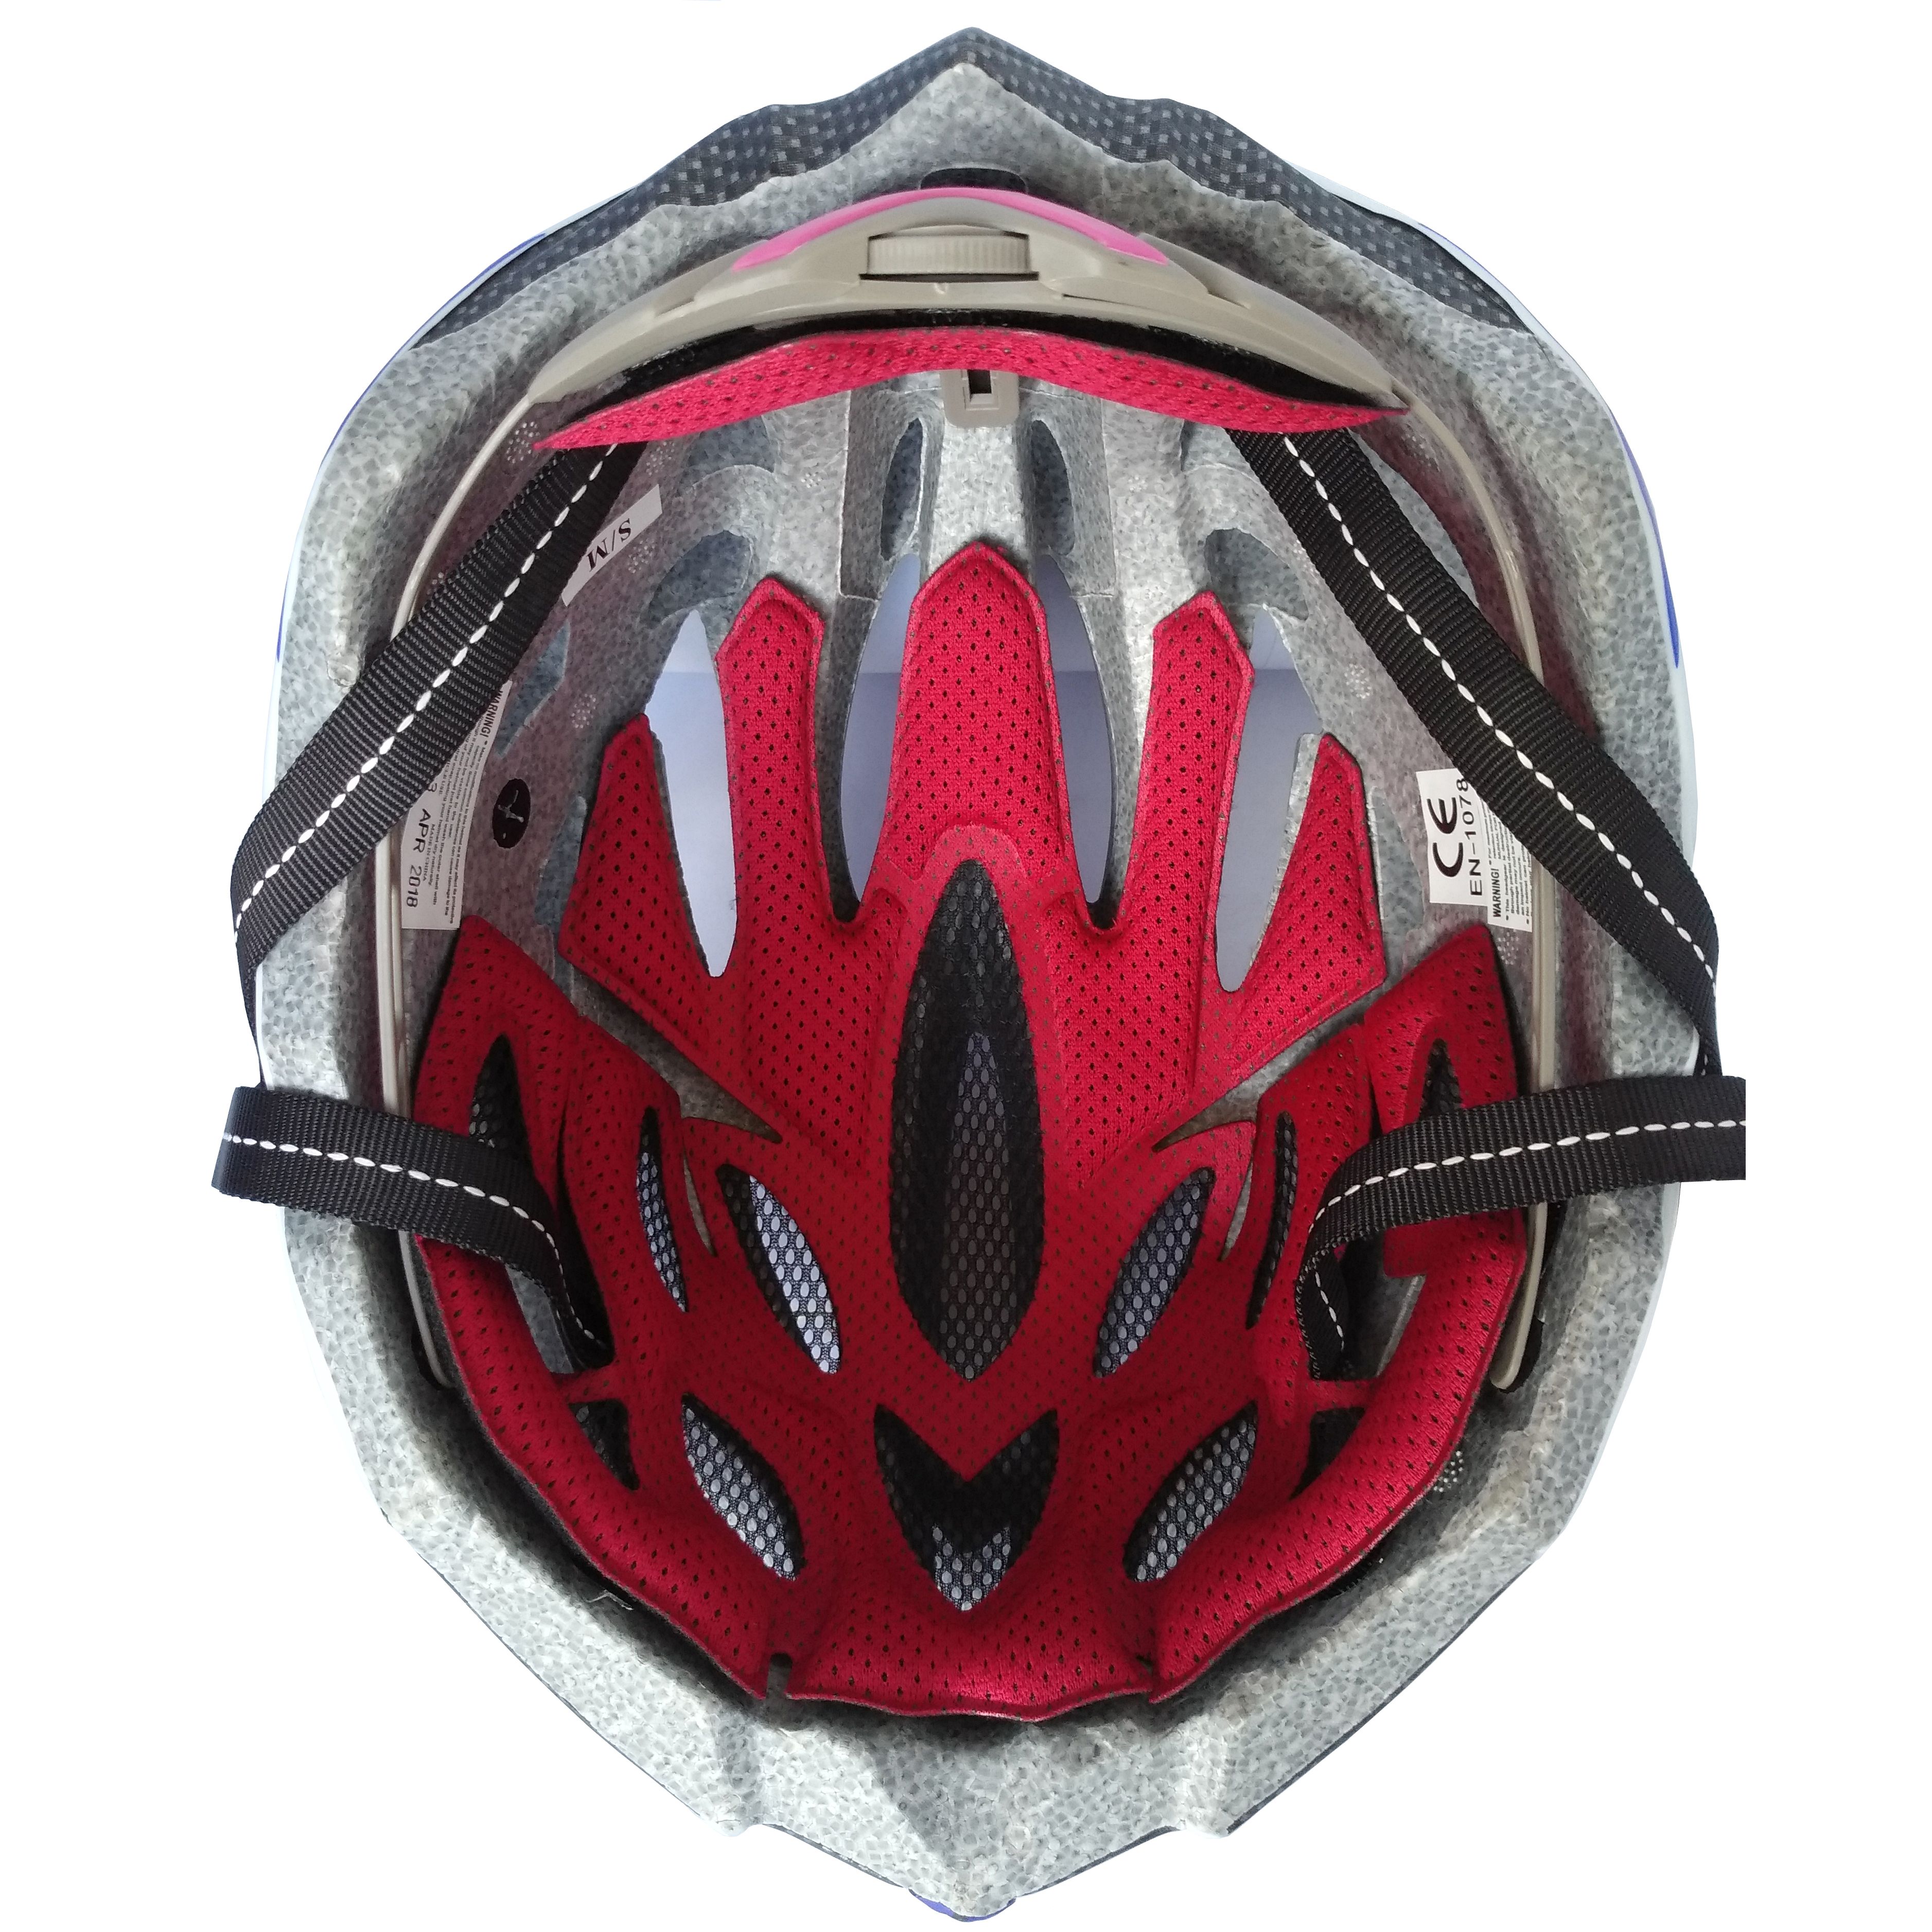 B3-30A Bicycle Helmet